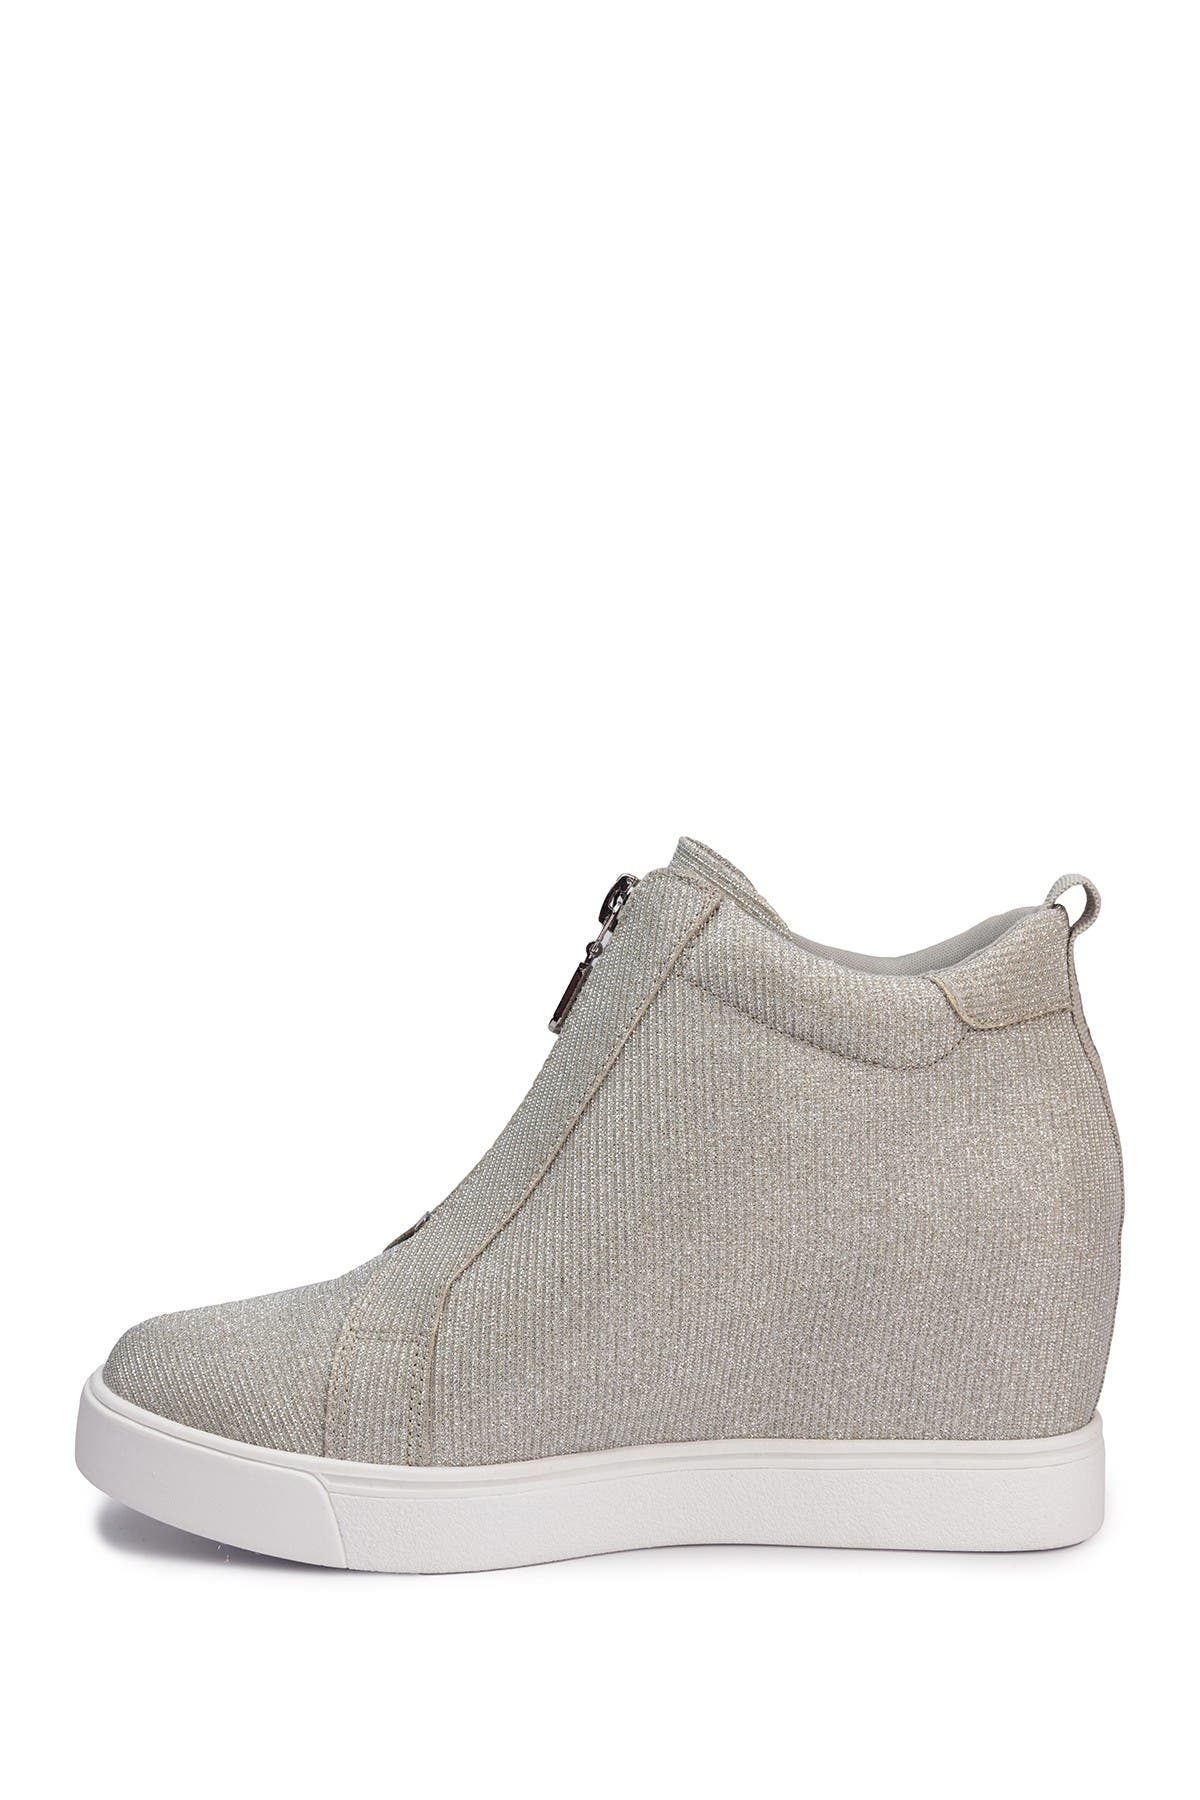 Juicy Couture Joanz Wedge Sneaker In Grey